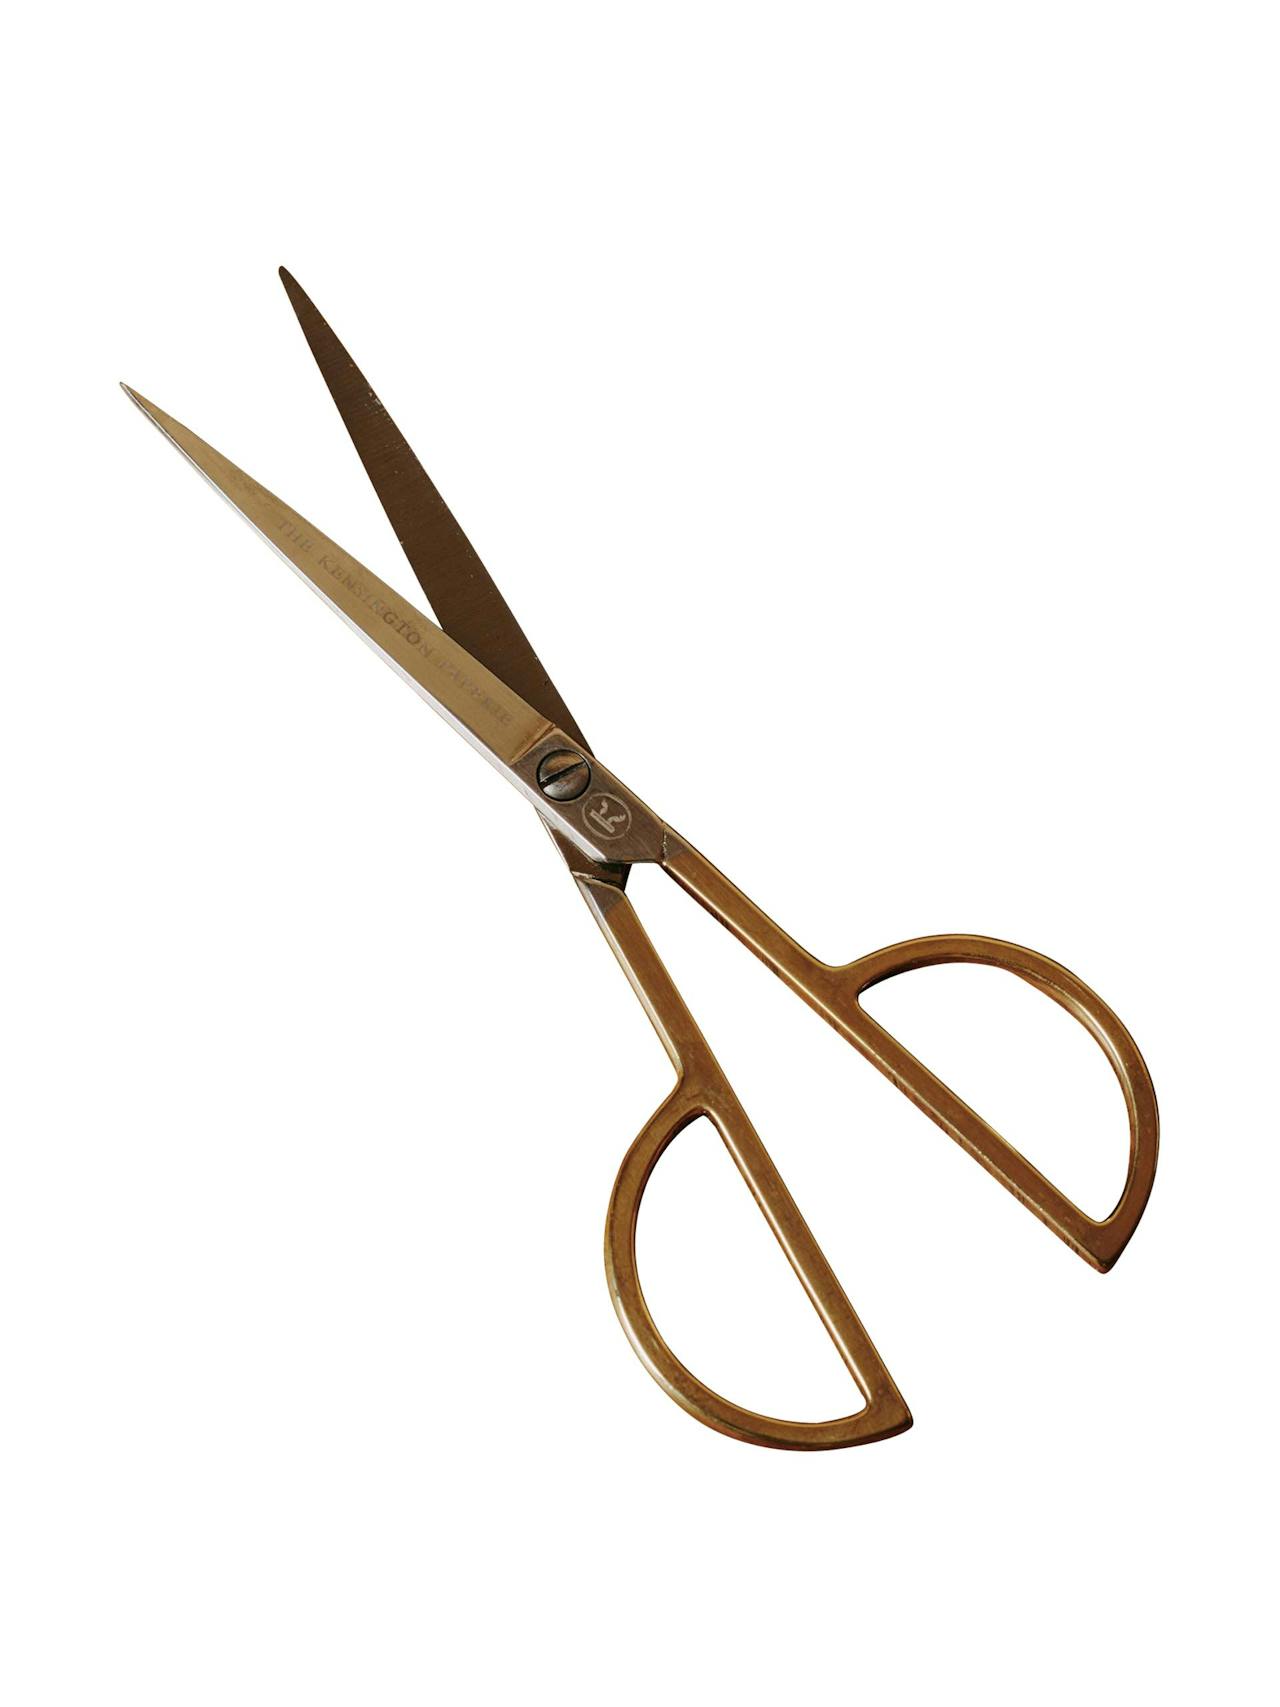 The Kensington Paperie scissors